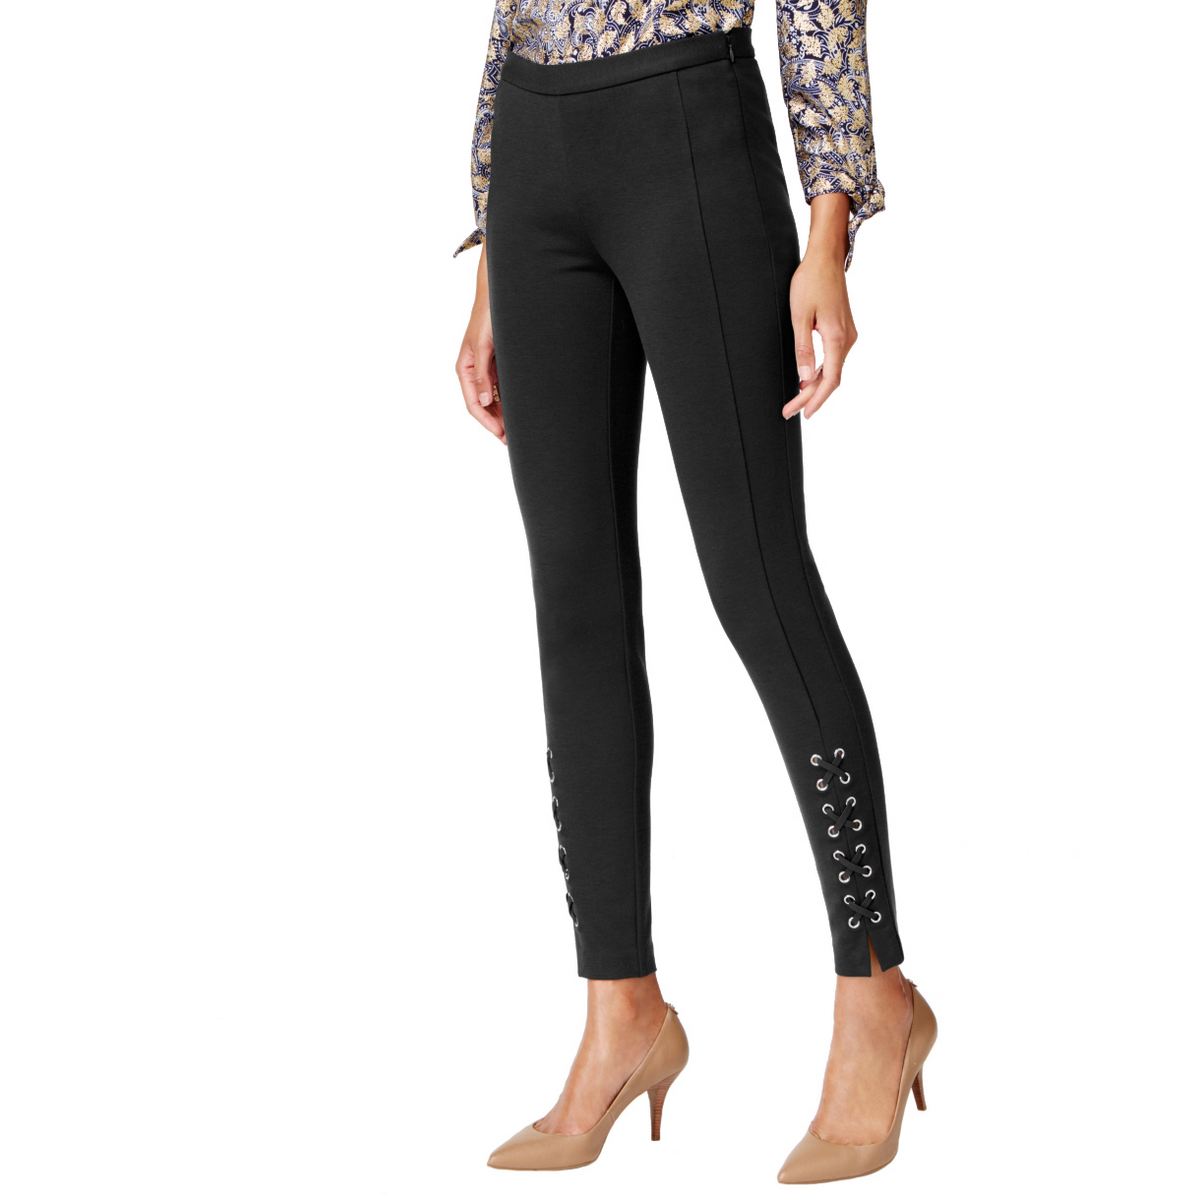 MICHAEL KORS NEW Women's Black Petite Lace-up Side Zip Casual Pants 14P ...